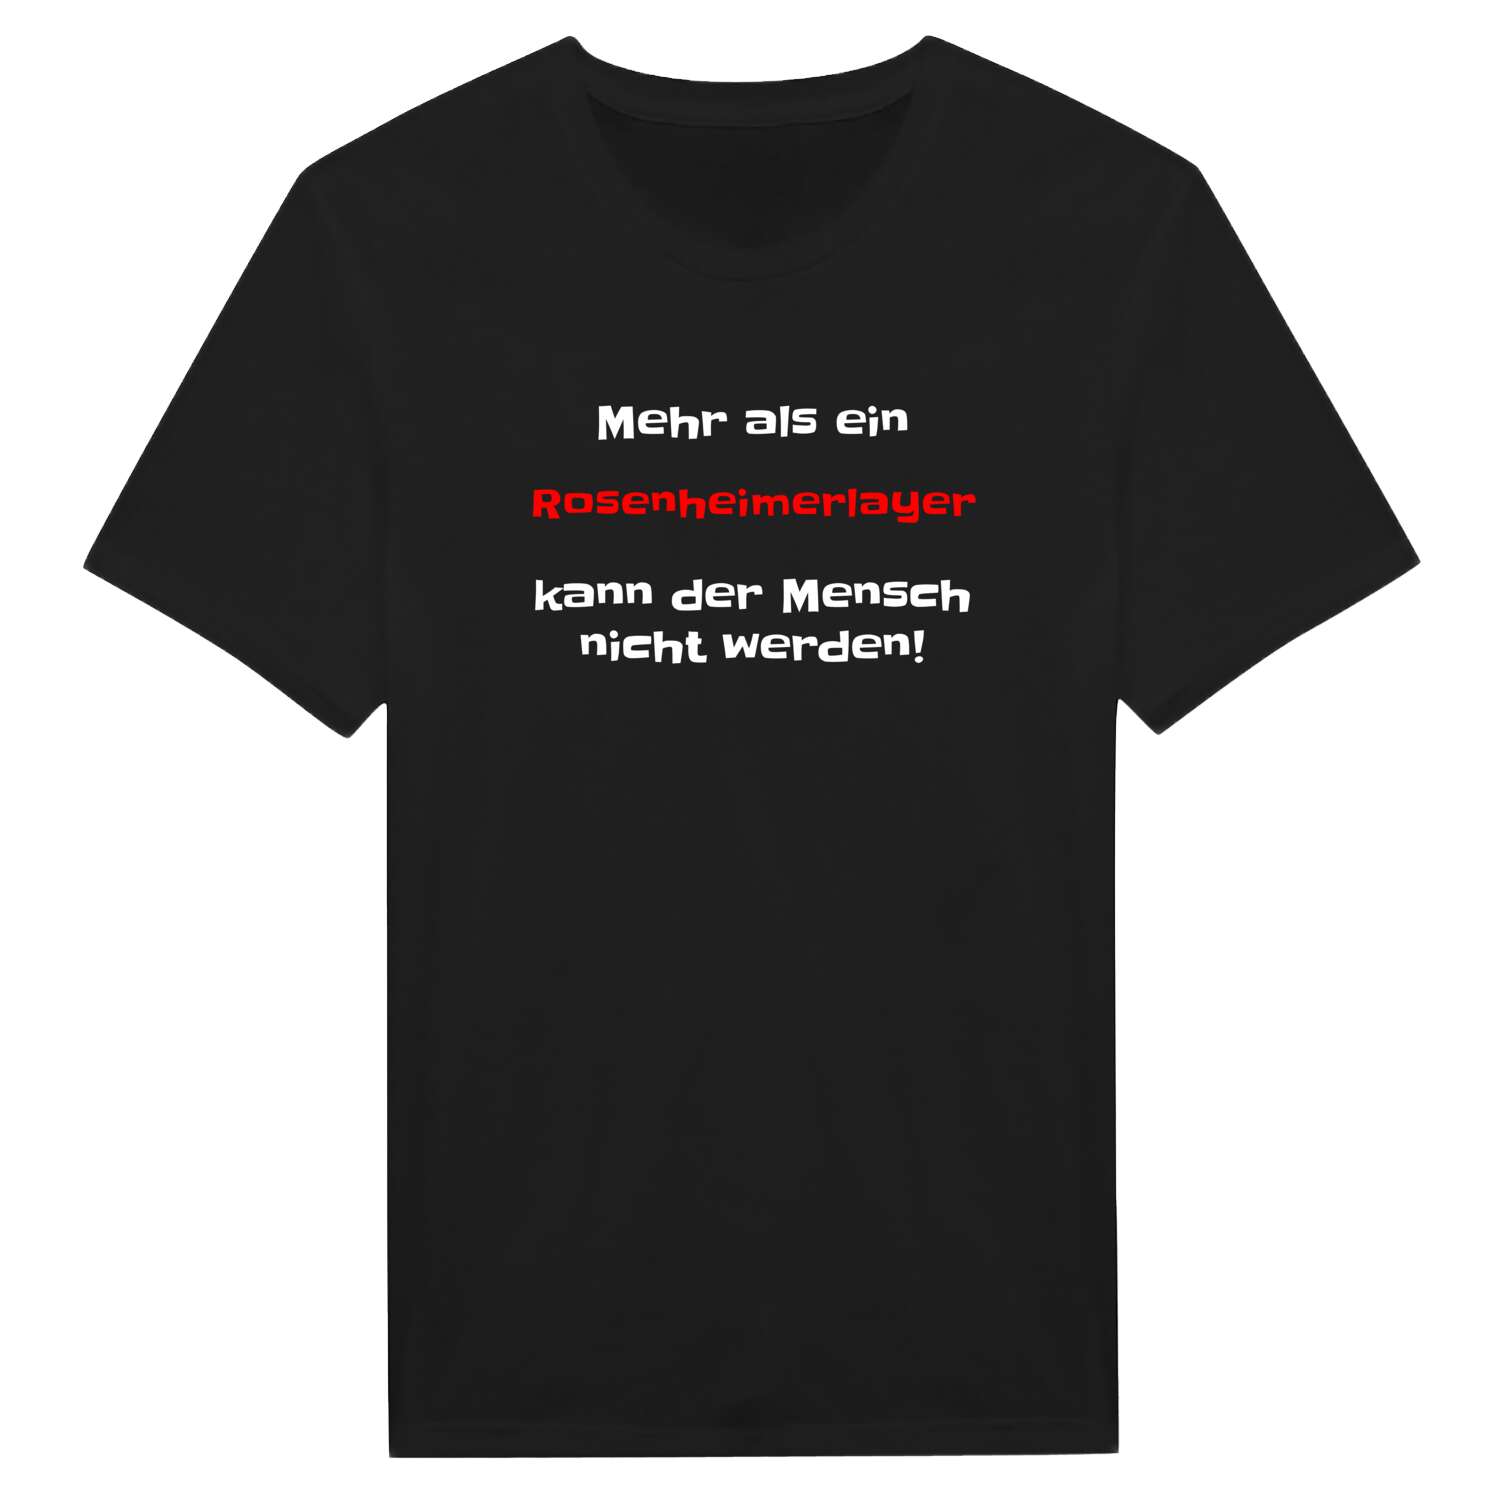 Rosenheimerlay T-Shirt »Mehr als ein«